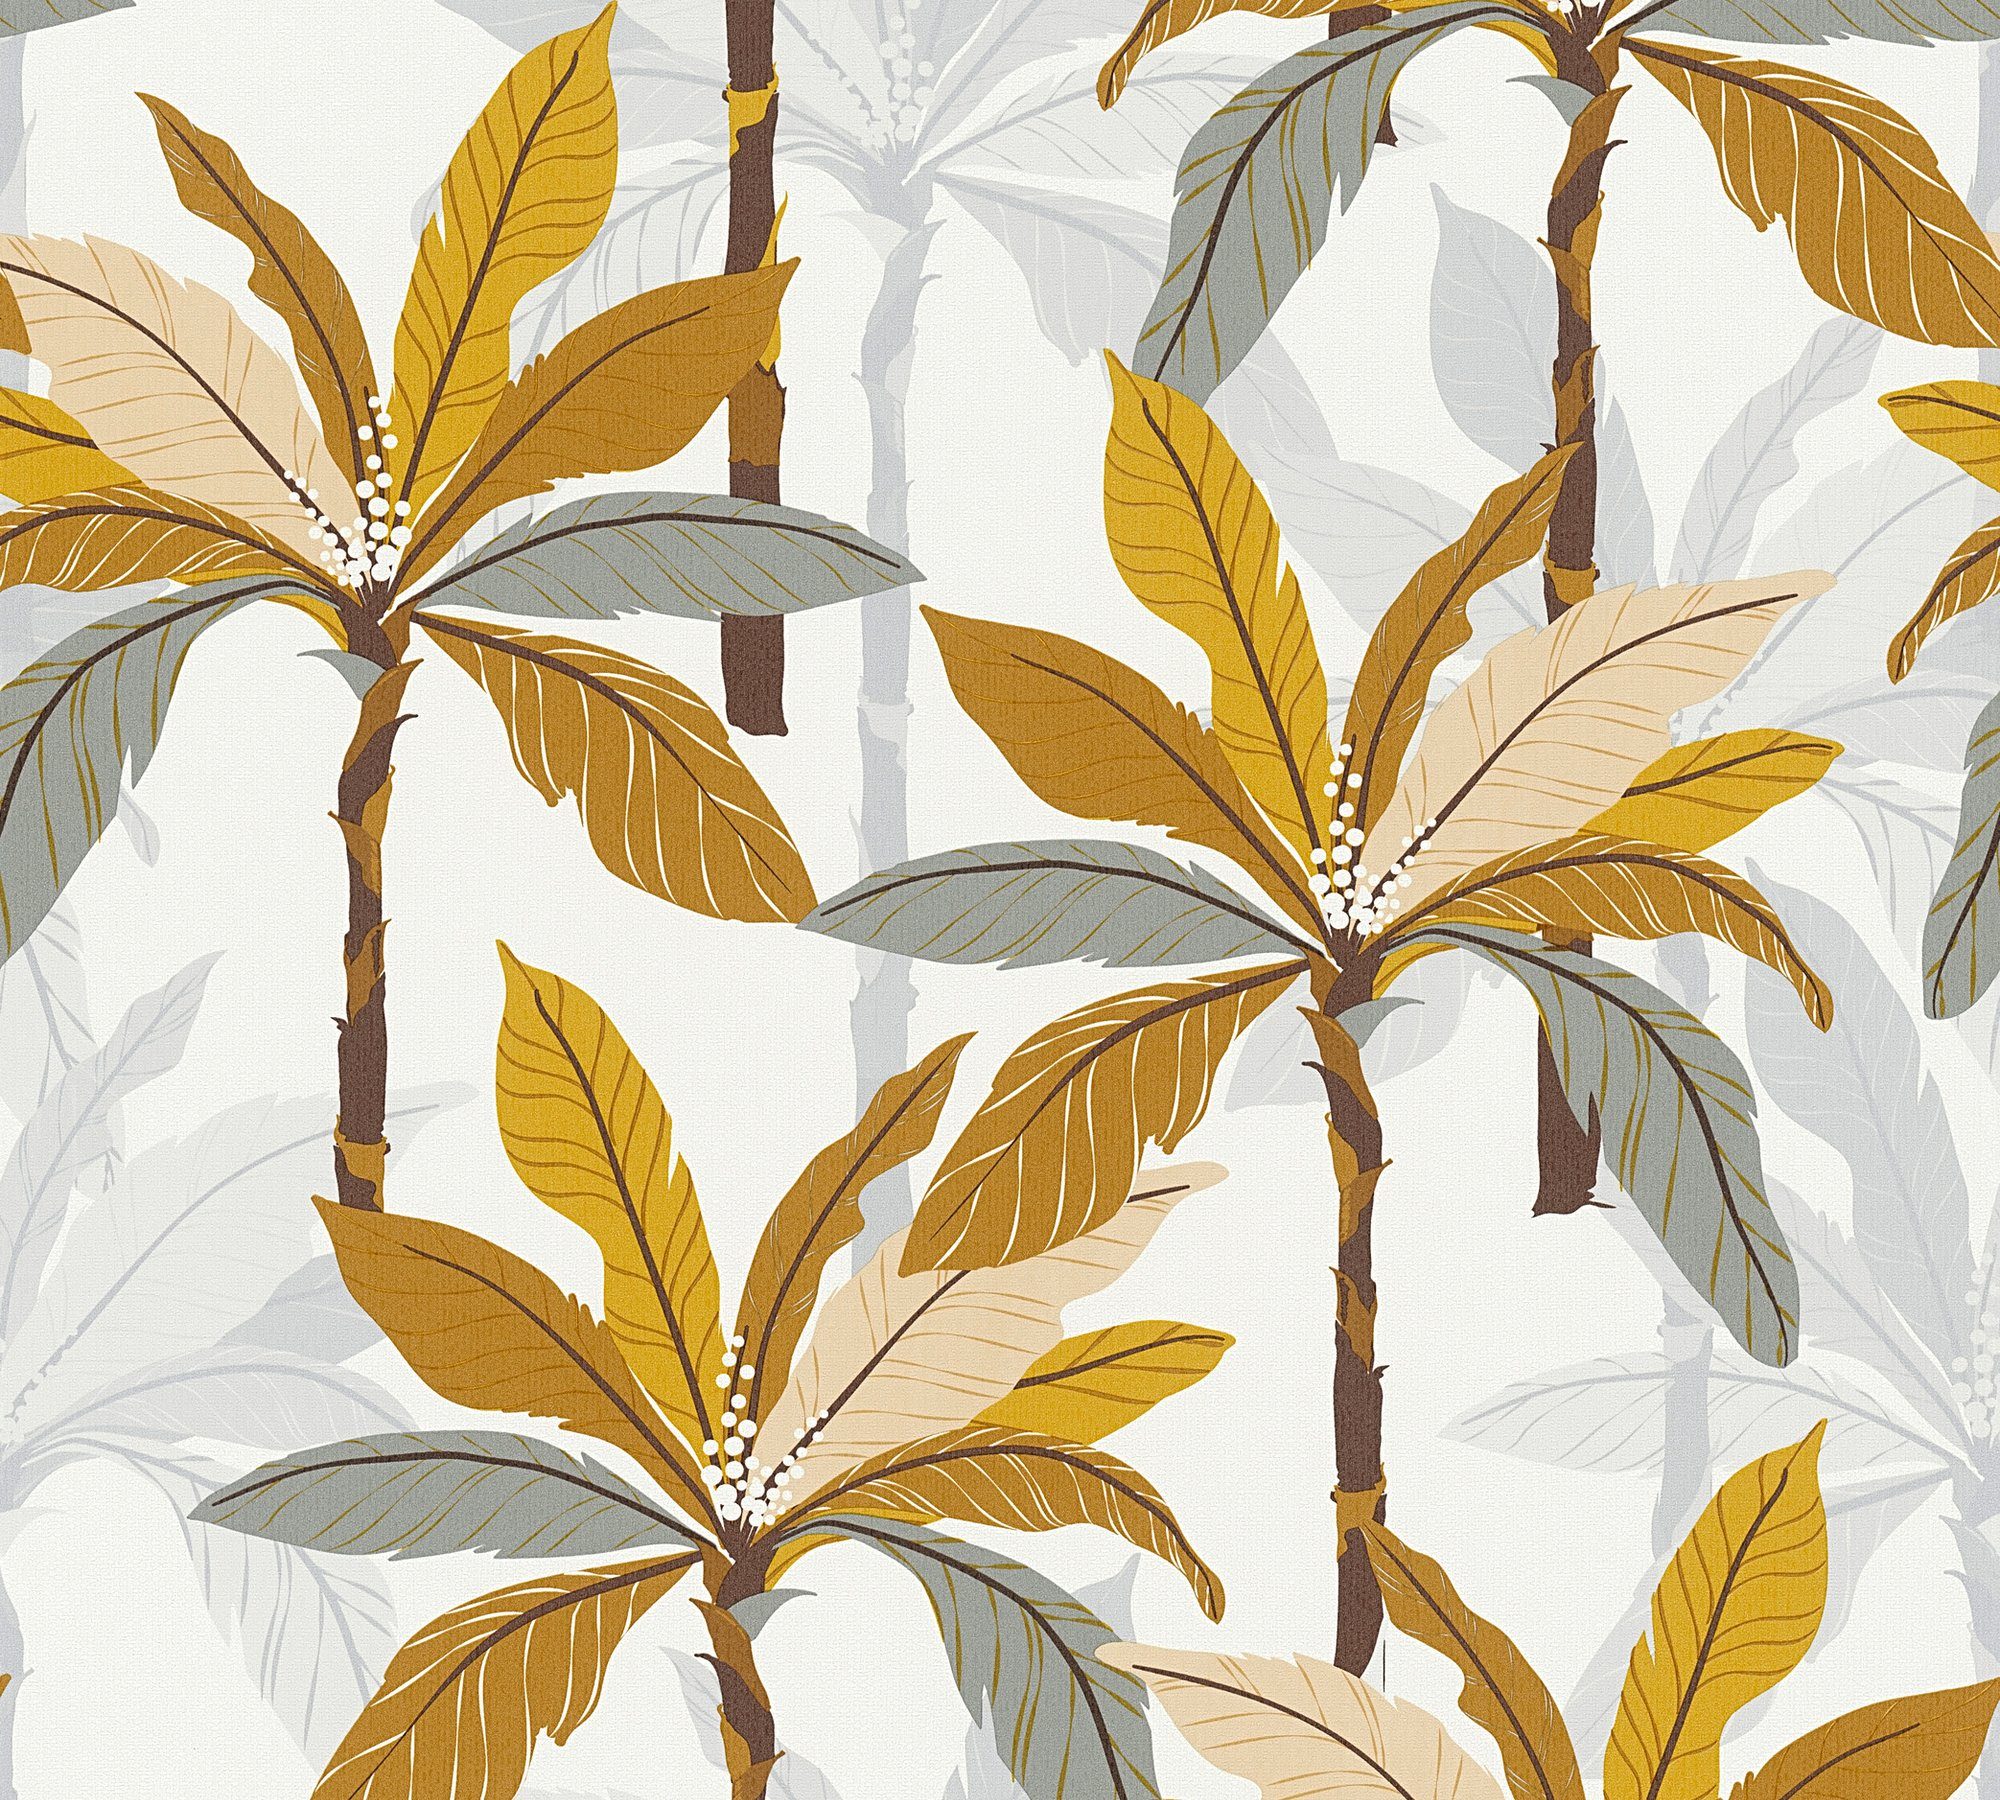 A.S. Création Vliestapete Palmen Geo orange/gelb/weiß Nordic, Dschungel strukturiert, Tapete floral